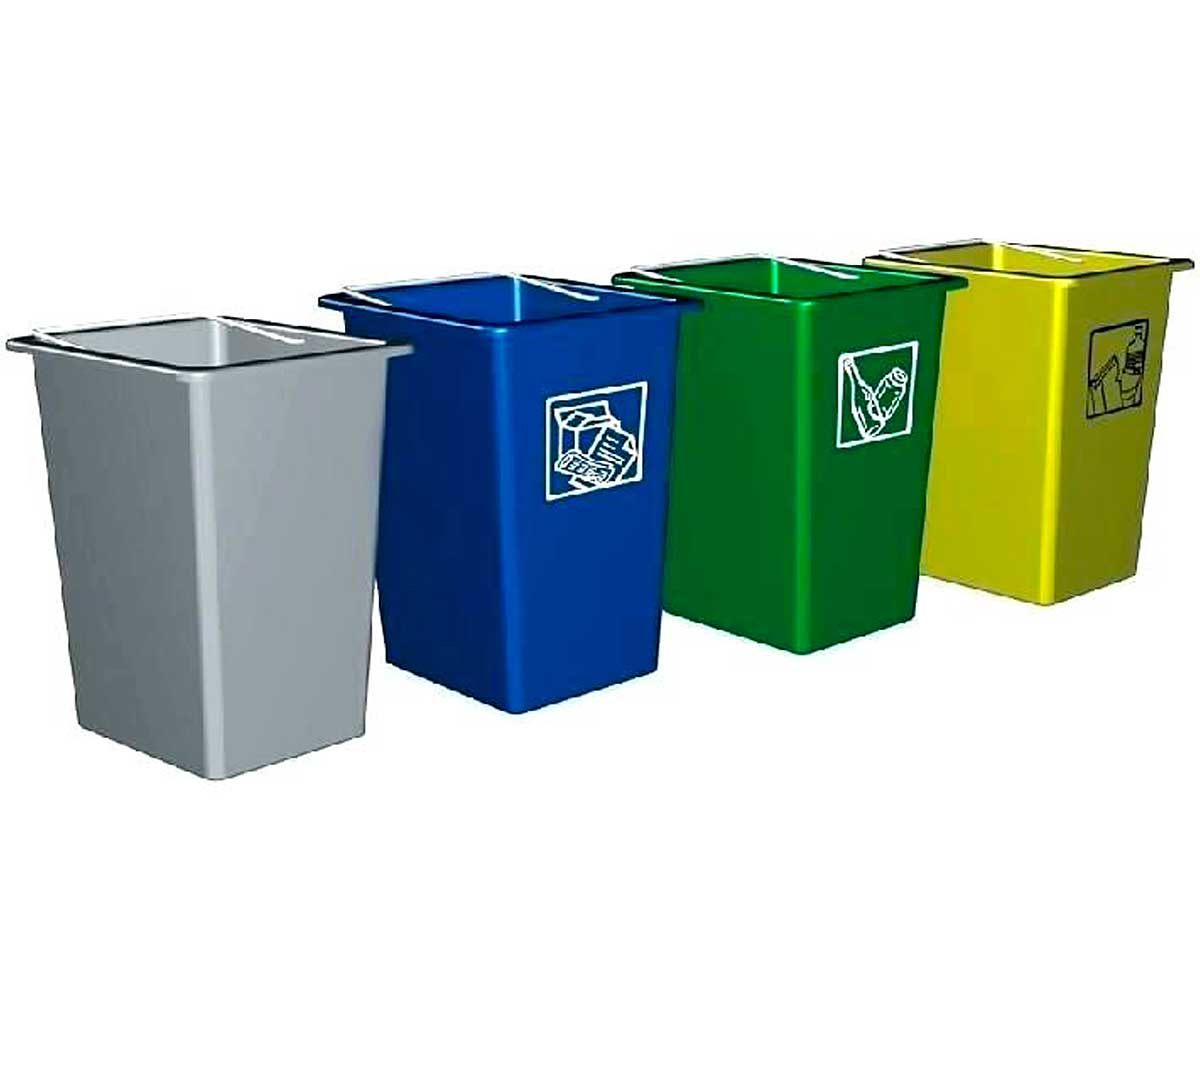 Contenedor para reciclaje en cartón reciclado – 60 litros – Pack